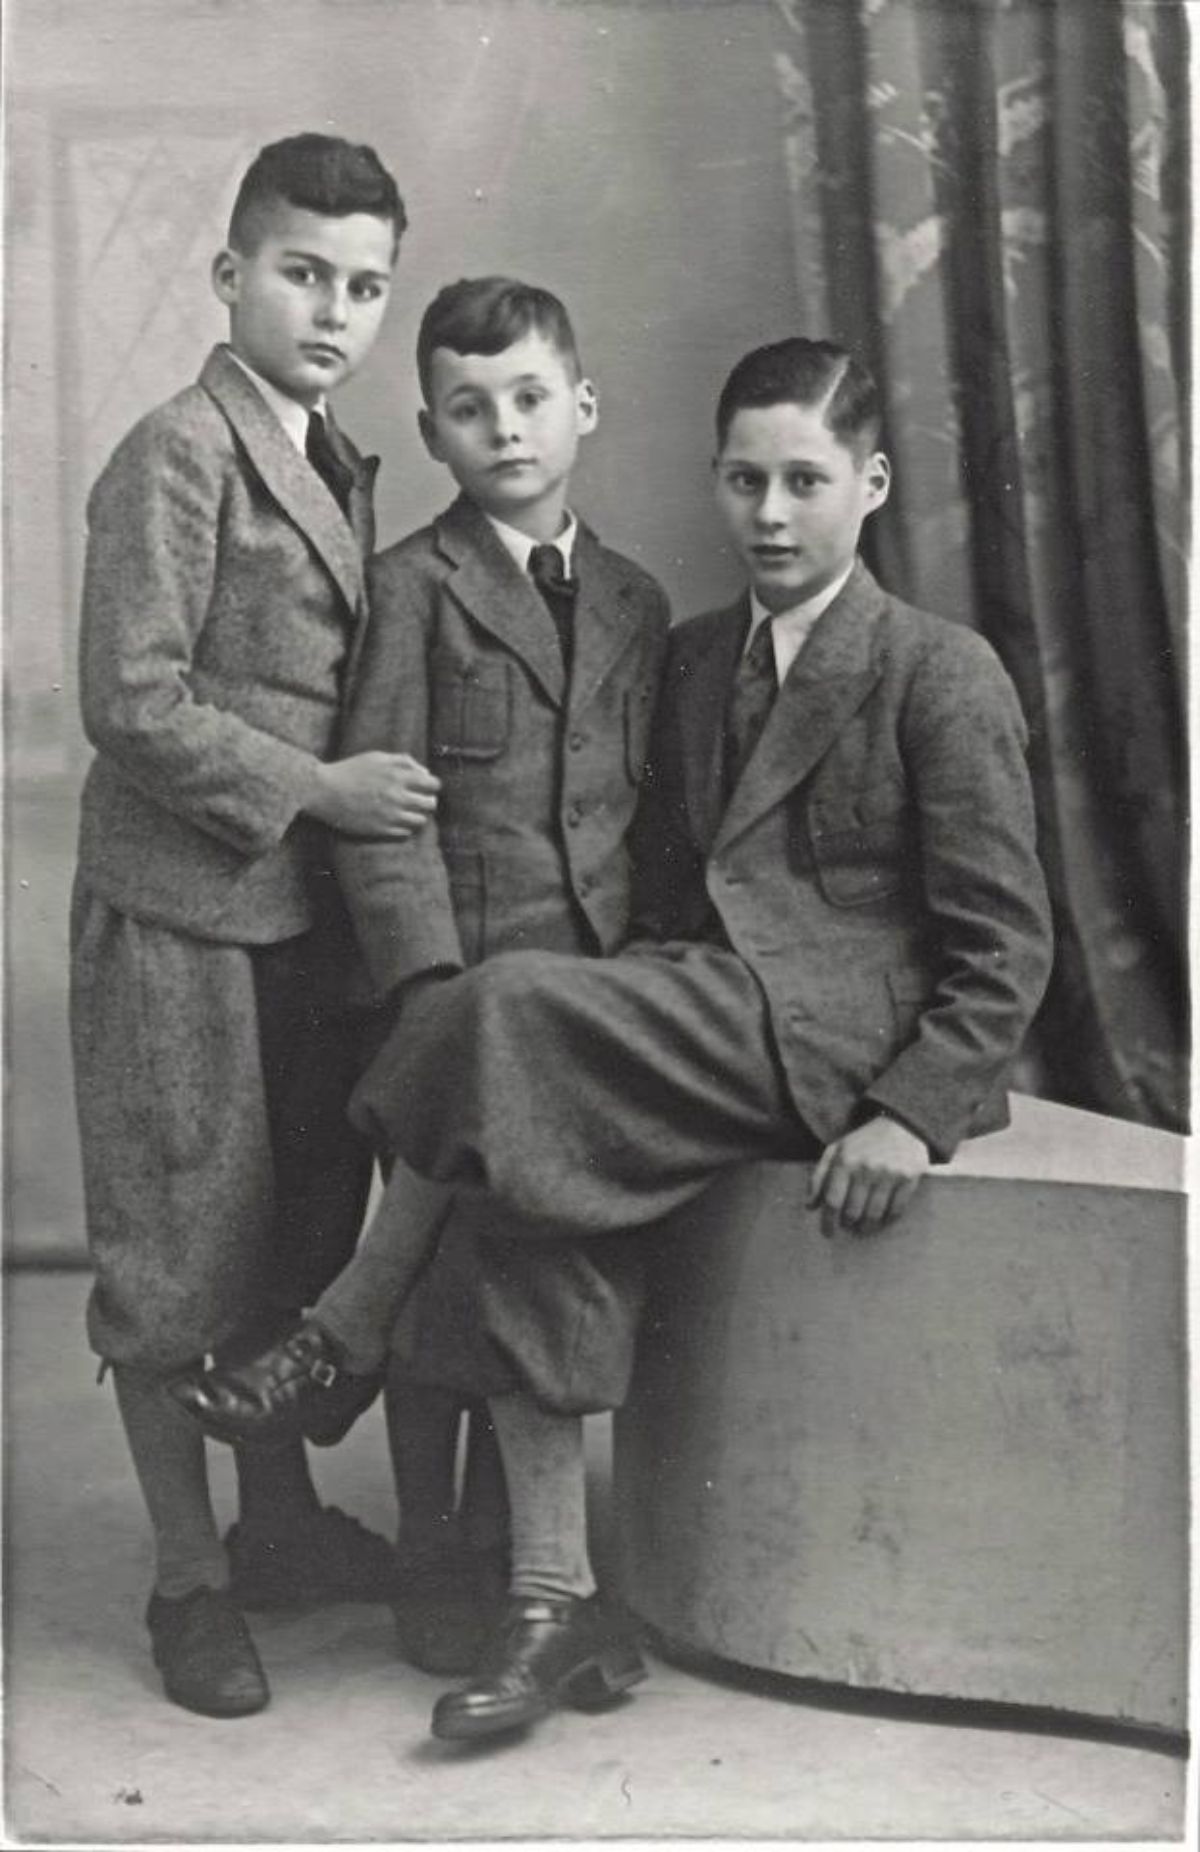 1935 in der Heimatstadt Bensheim an der Bergstraße. Die Rosenstein-Brüder Hans, Jerry und Ernst.